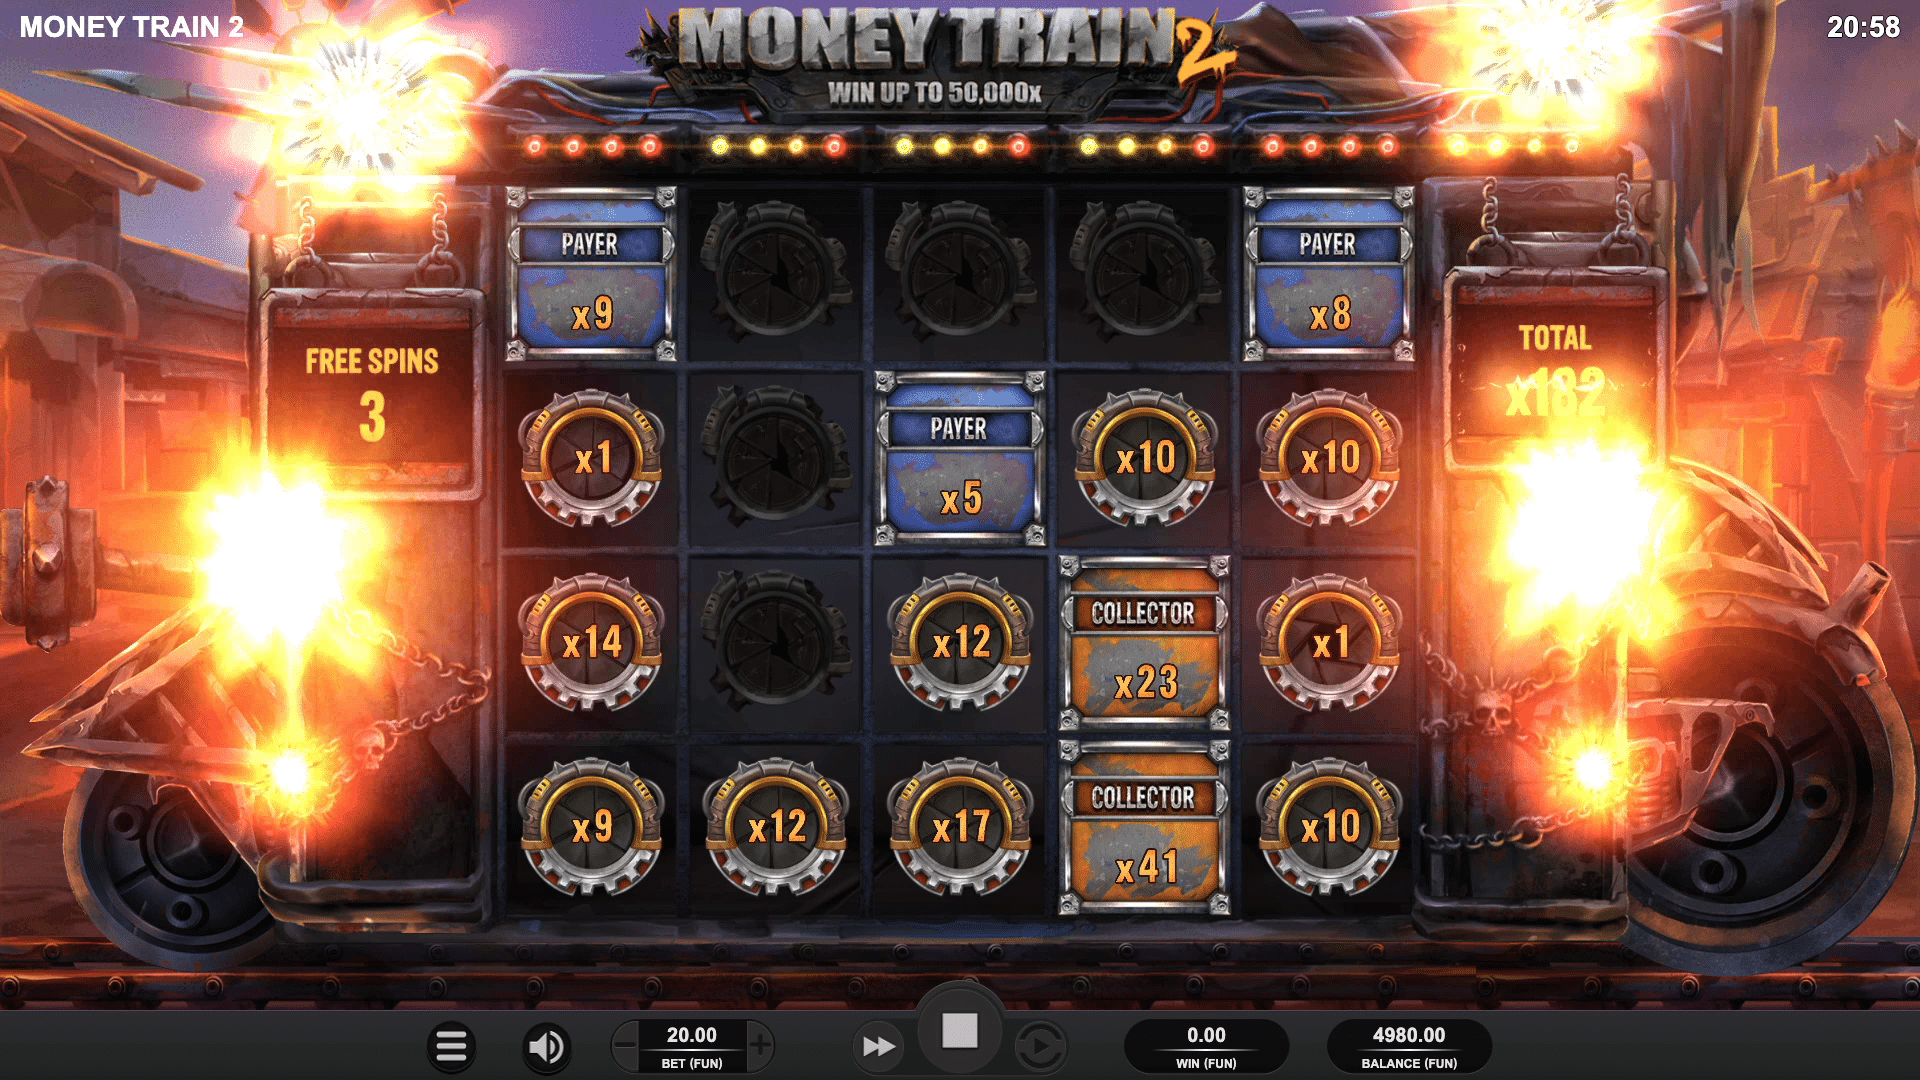 Money Train 2 gameplay screenshot